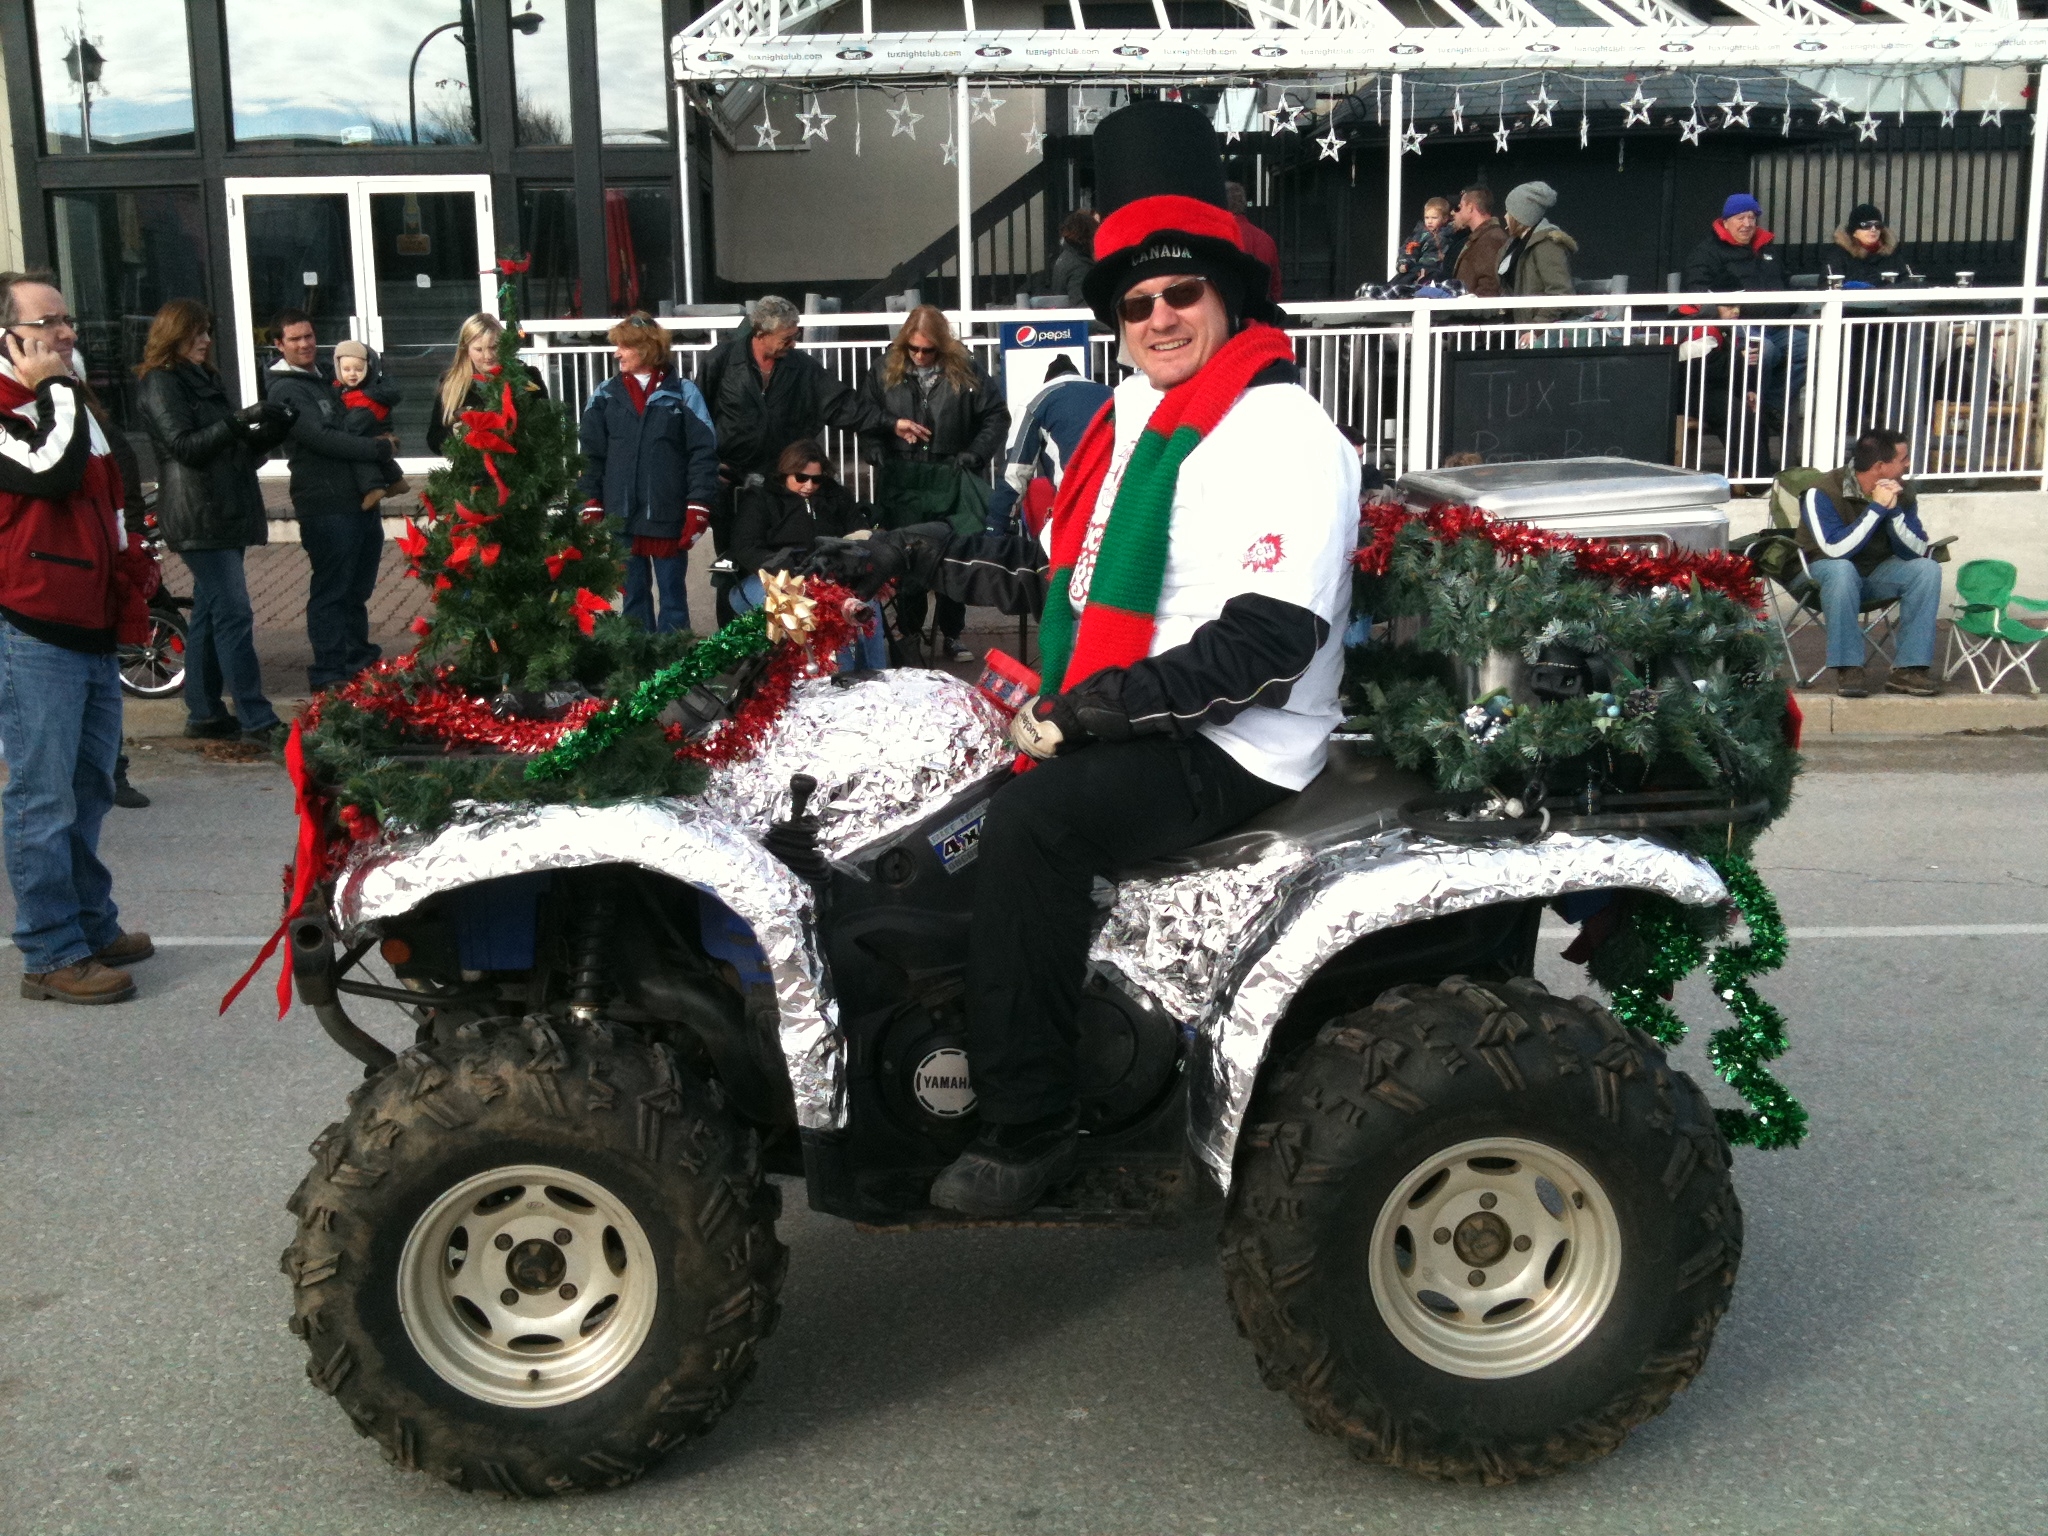 Dave North - Santa Clause Parade (002)